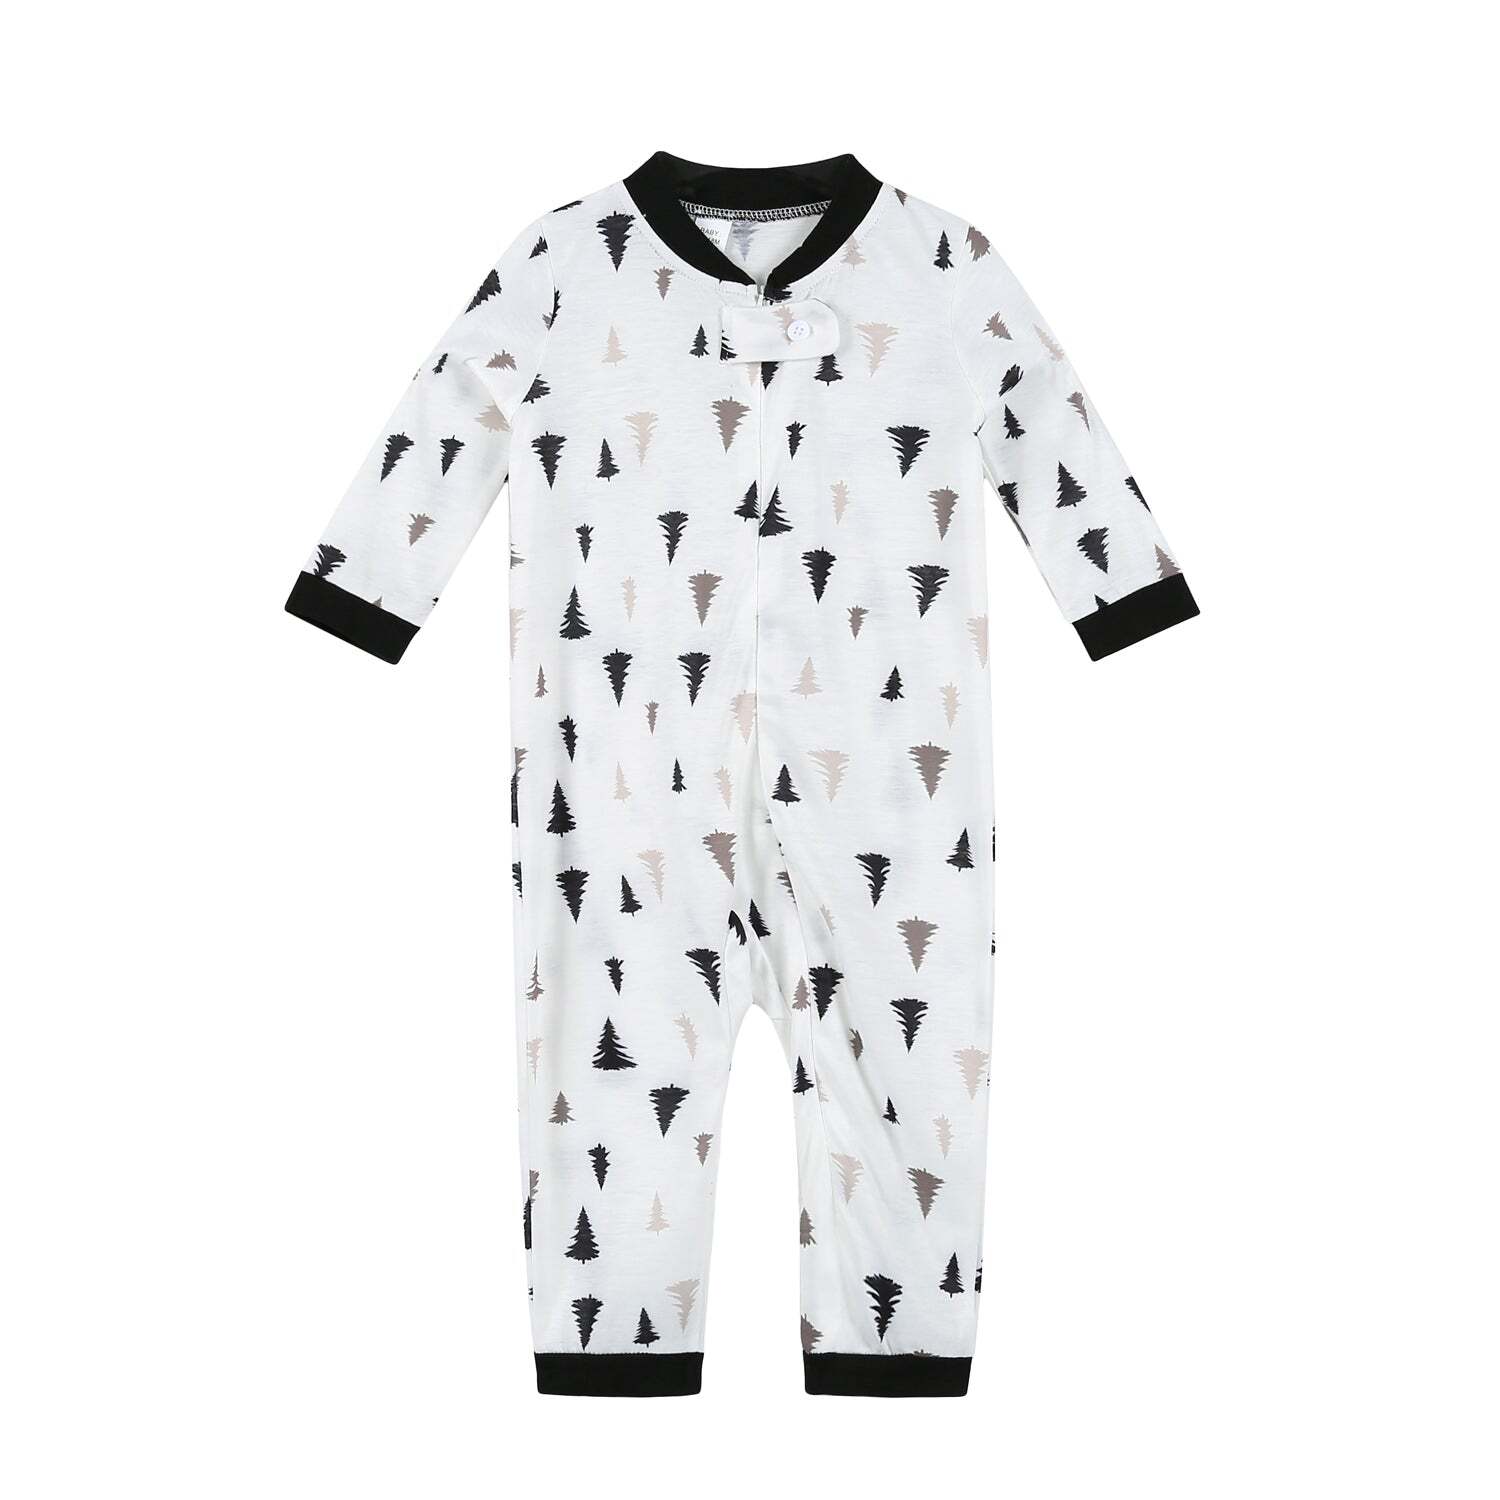 Christmas printed round collar baby pajamas set